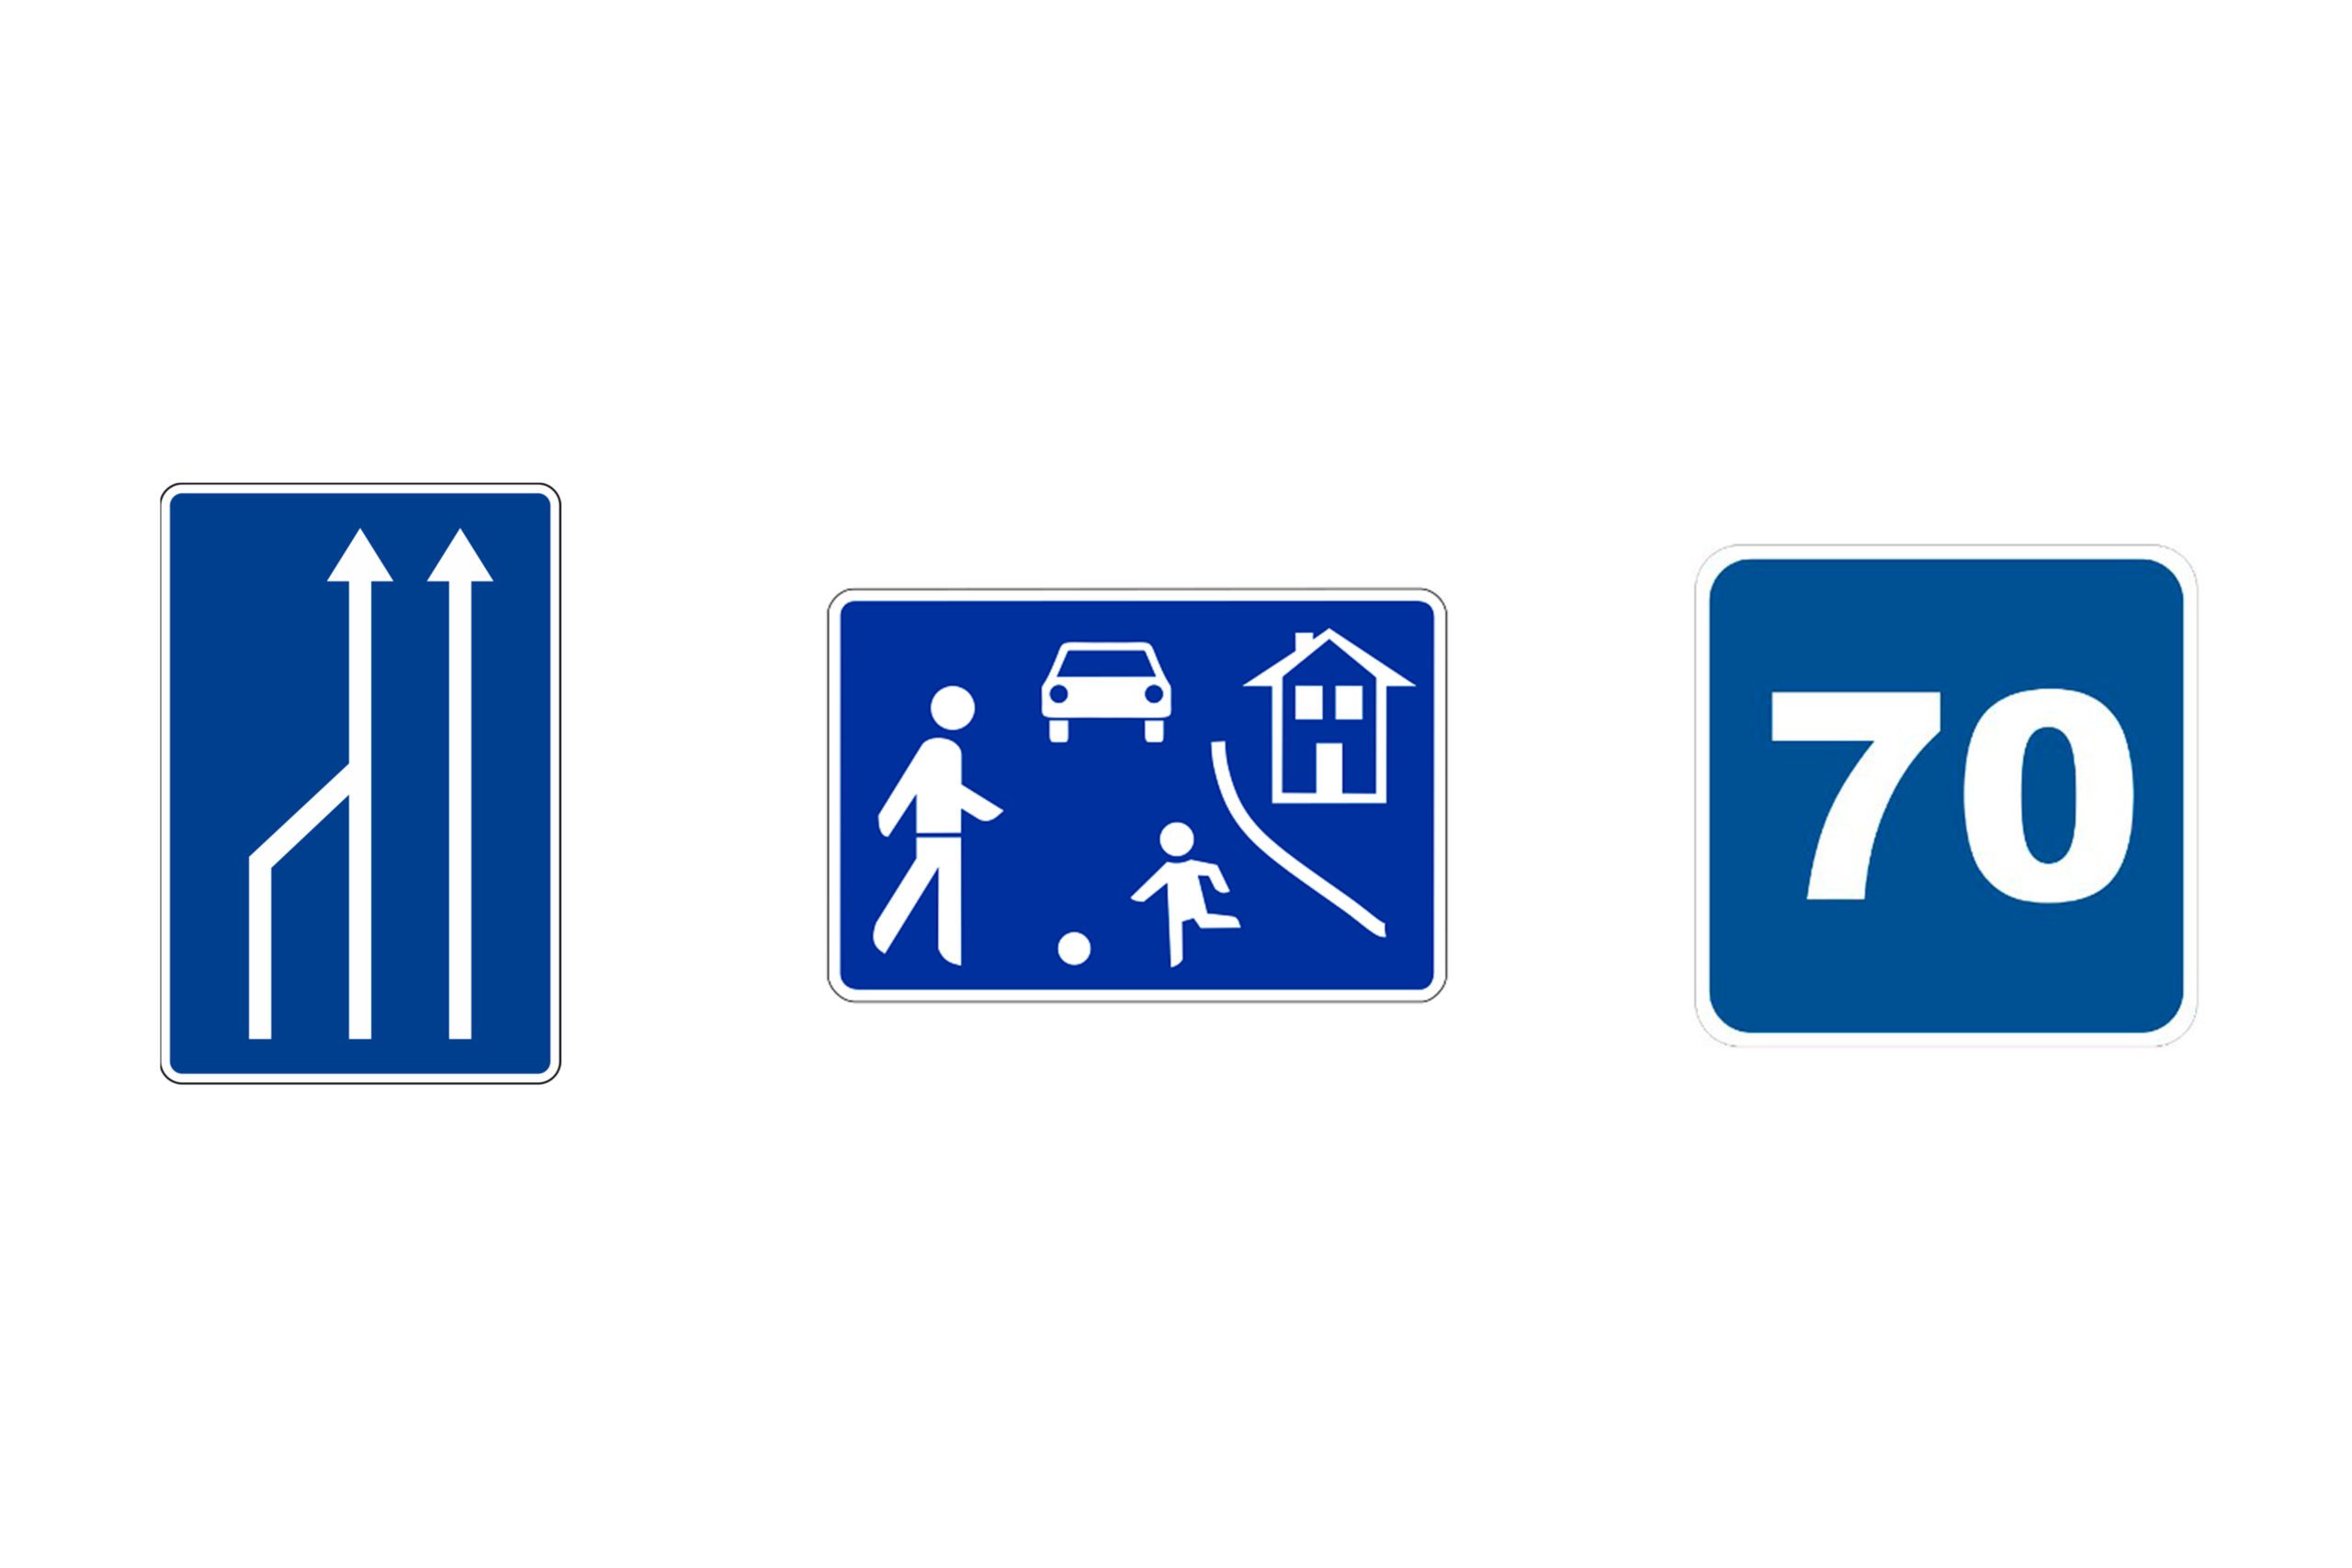 señales de trafico y su significado rectangulares